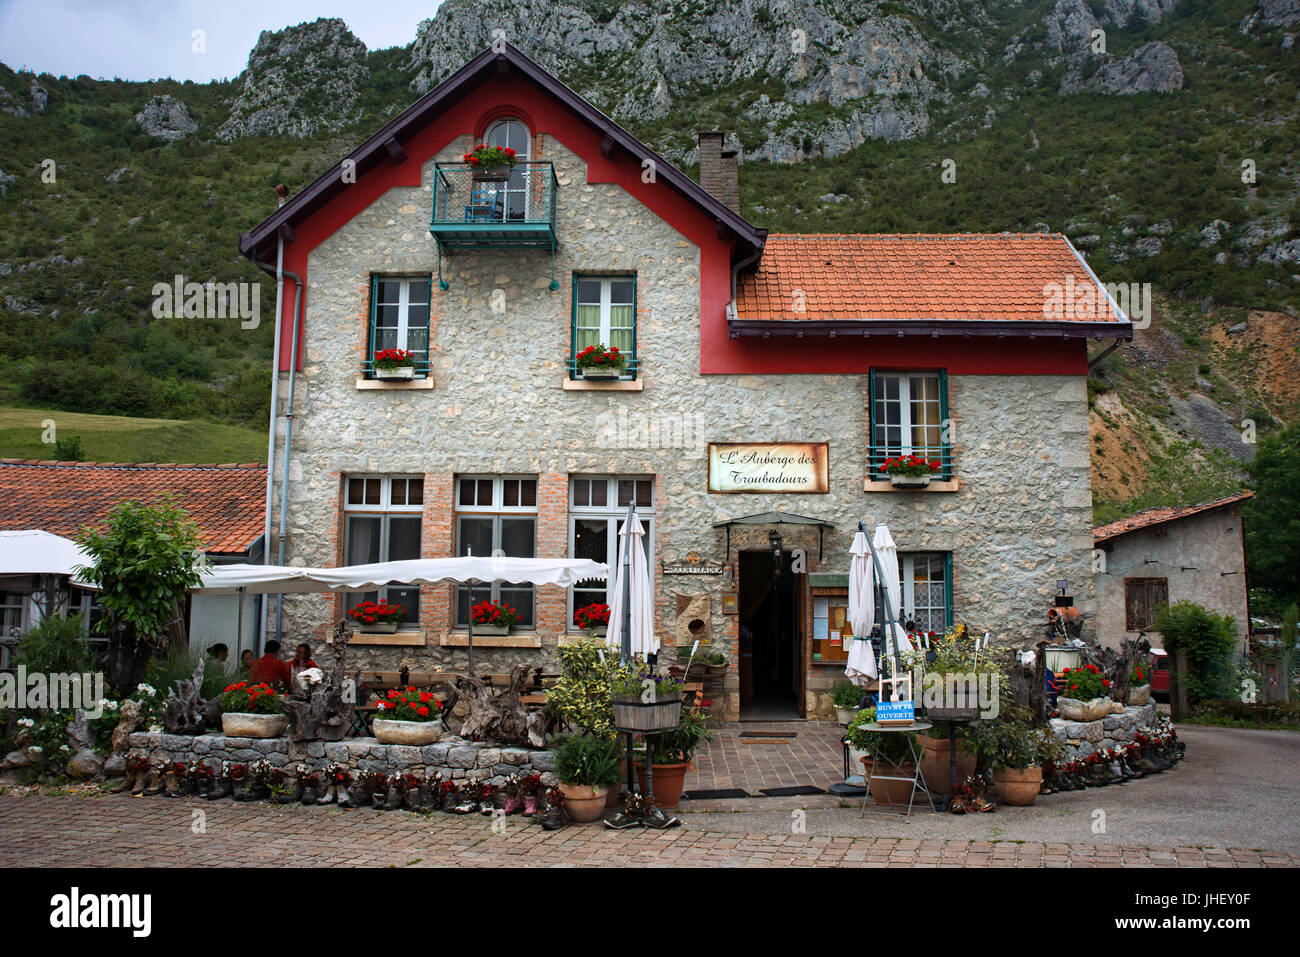 L'Auberge des troubadours restaurant dans village de Roquefixade, Ariège, Midi-Pyrénées, France Banque D'Images